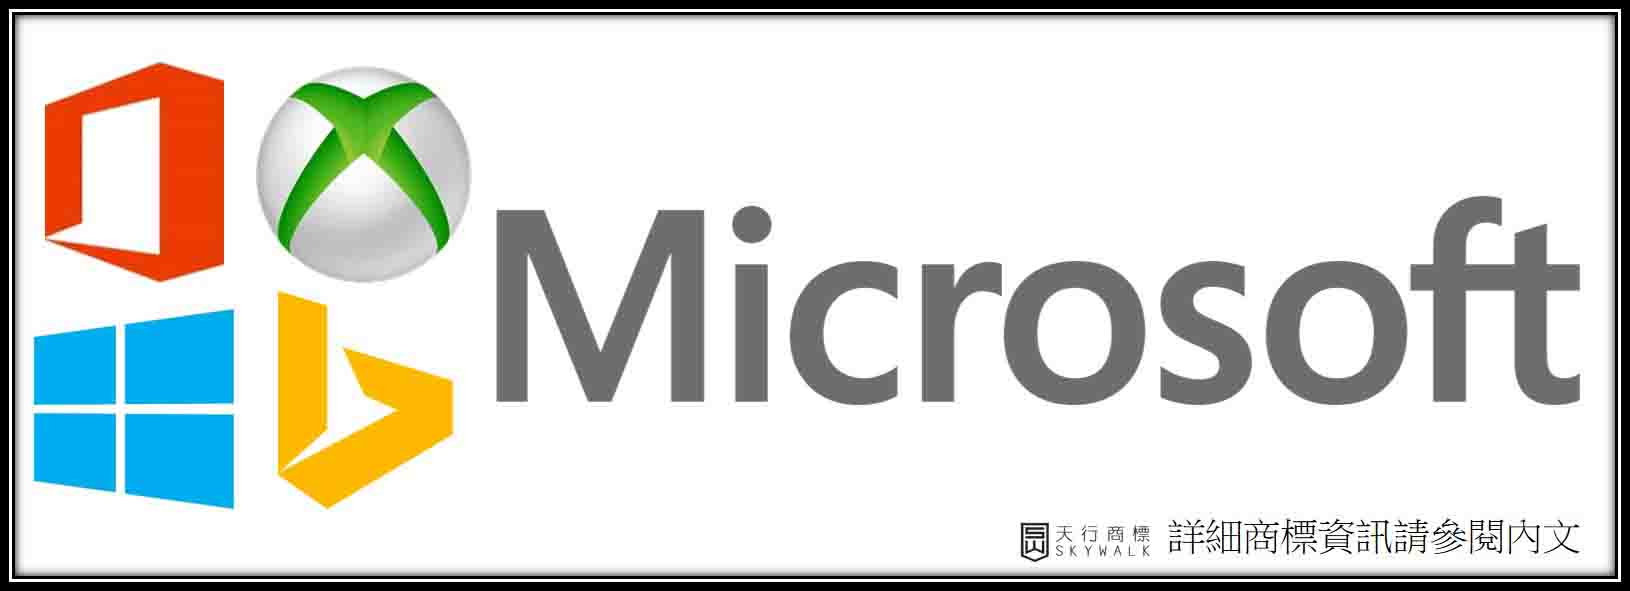 微軟Microsoft四種顏色的意思